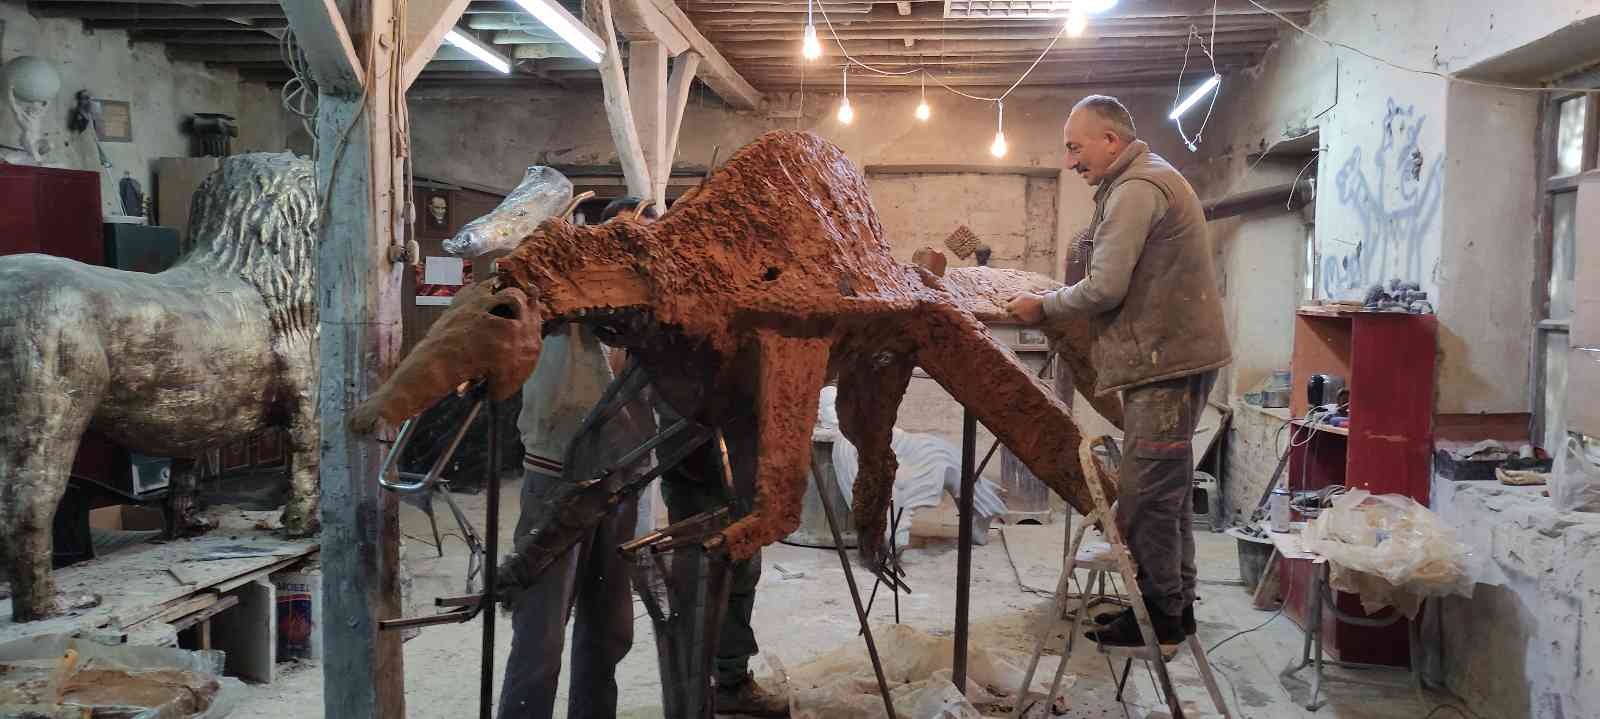 Bursa’da heykeltıraşların hazırladıkları özel malzemeyle yaptıkları hayvan heykellerini görenler gerçeğinden ayıramıyor. Uzun yıllardır heykel ...